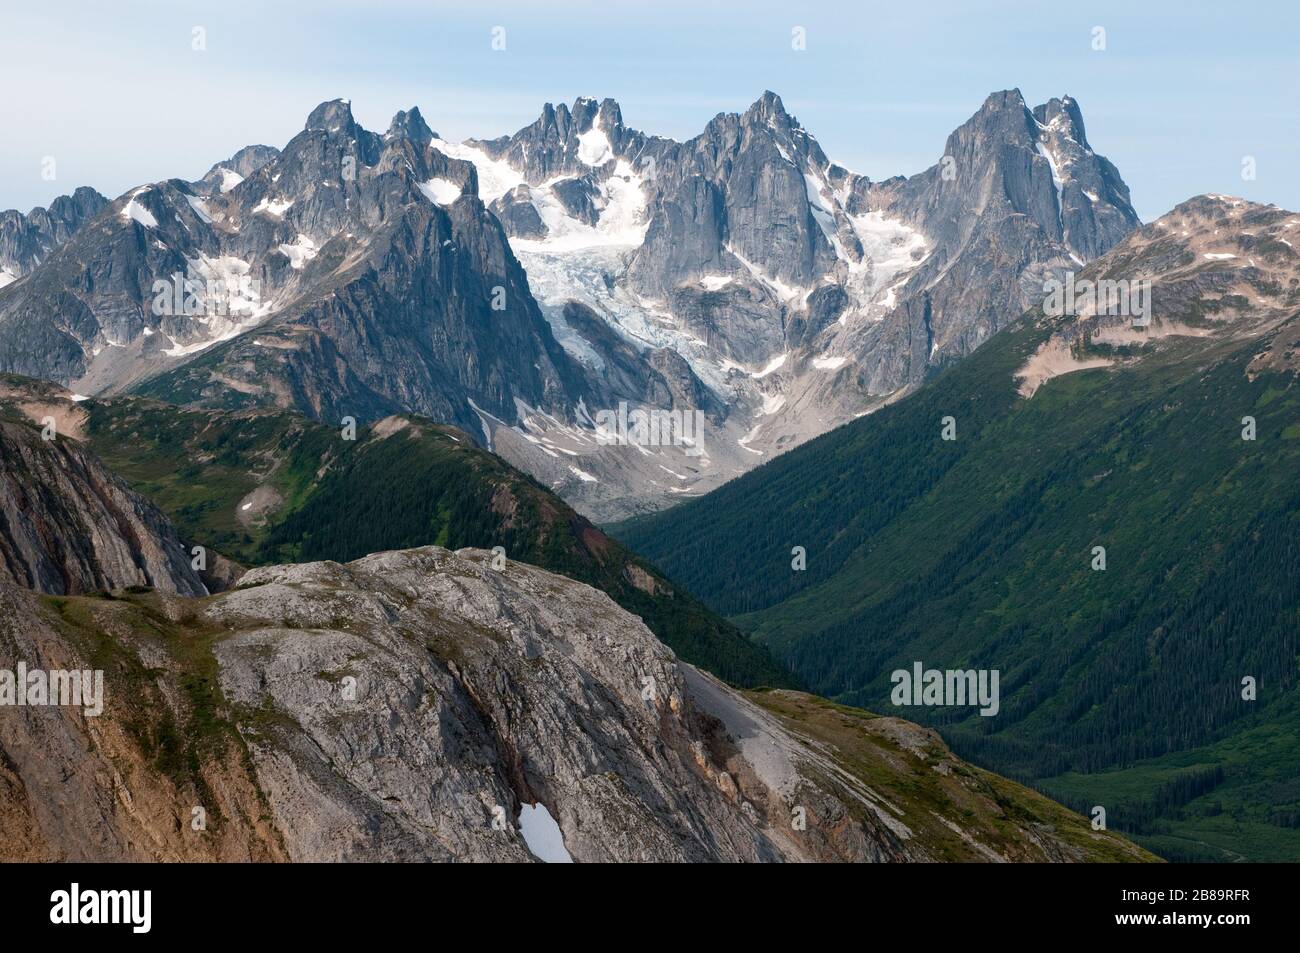 Valhalla Mountain, in den Bounary Ranges der Coast Mountains, oberhalb des Stikine River Valley, im Norden British Columbias, Kanada. Stockfoto